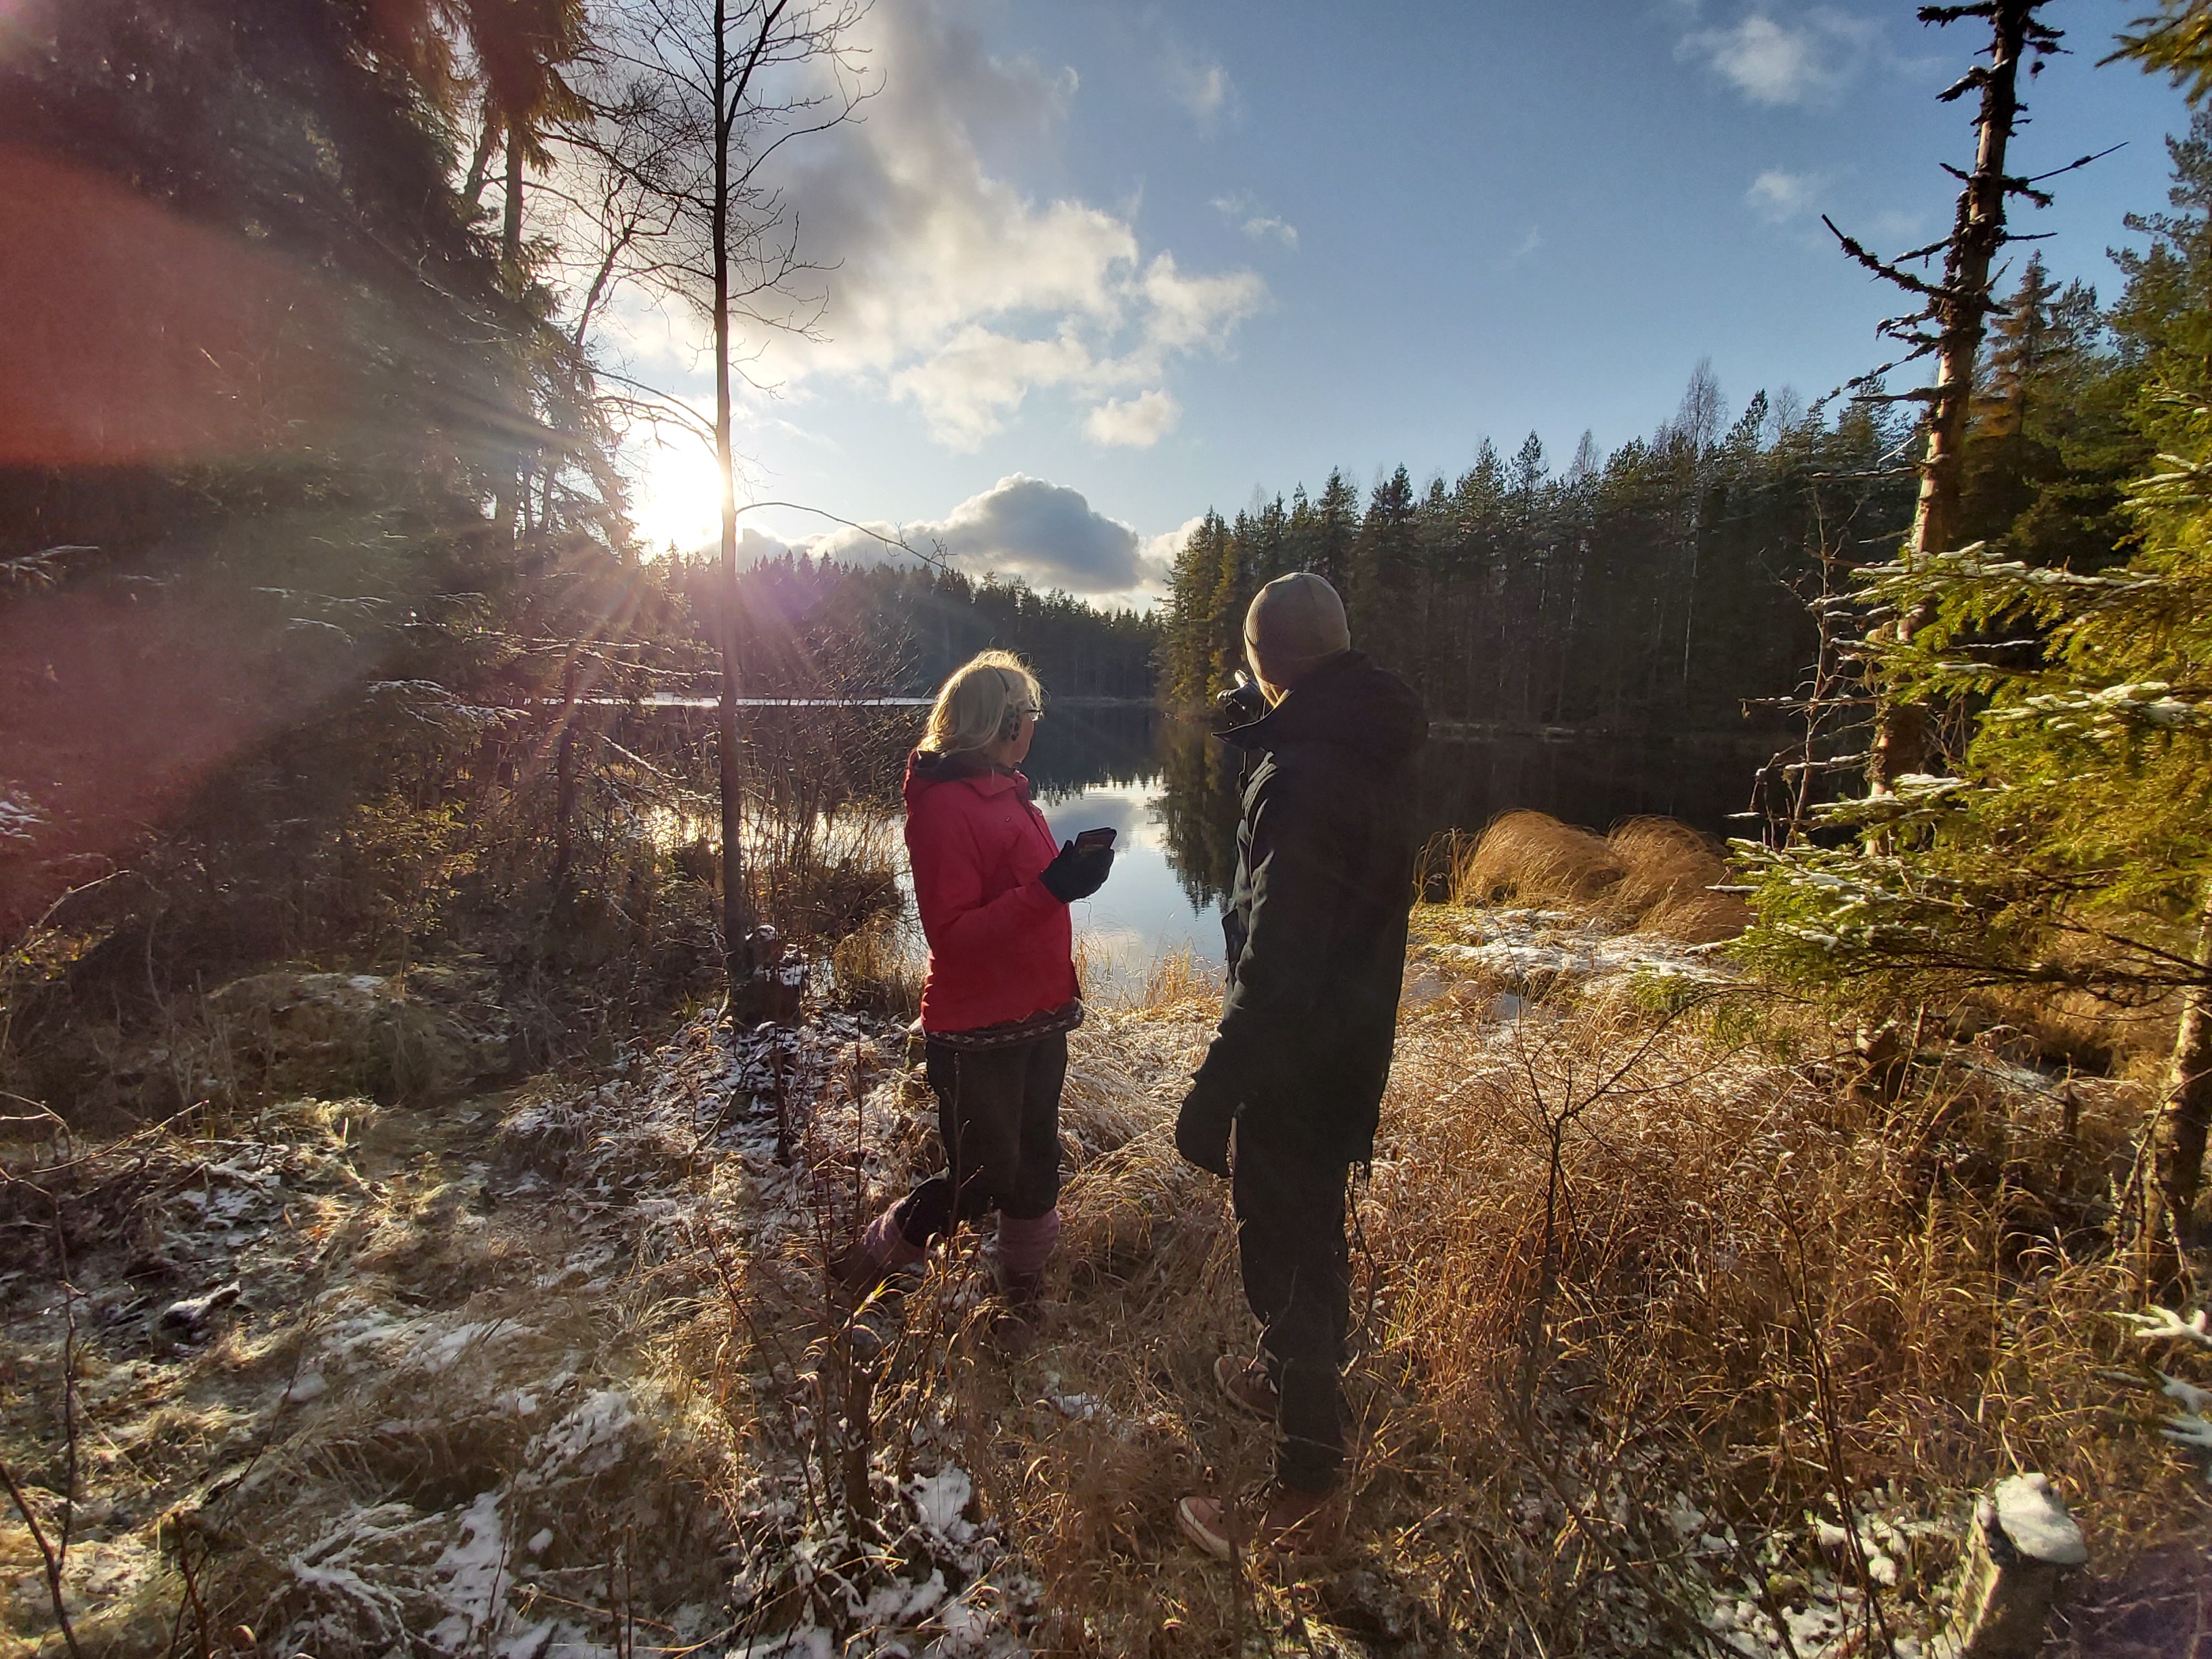 Maisemakuva, jossa kaksi henkilöä seisoo järven rannalla ja katsovat järven suuntaan, jossa paistaa aurinko.